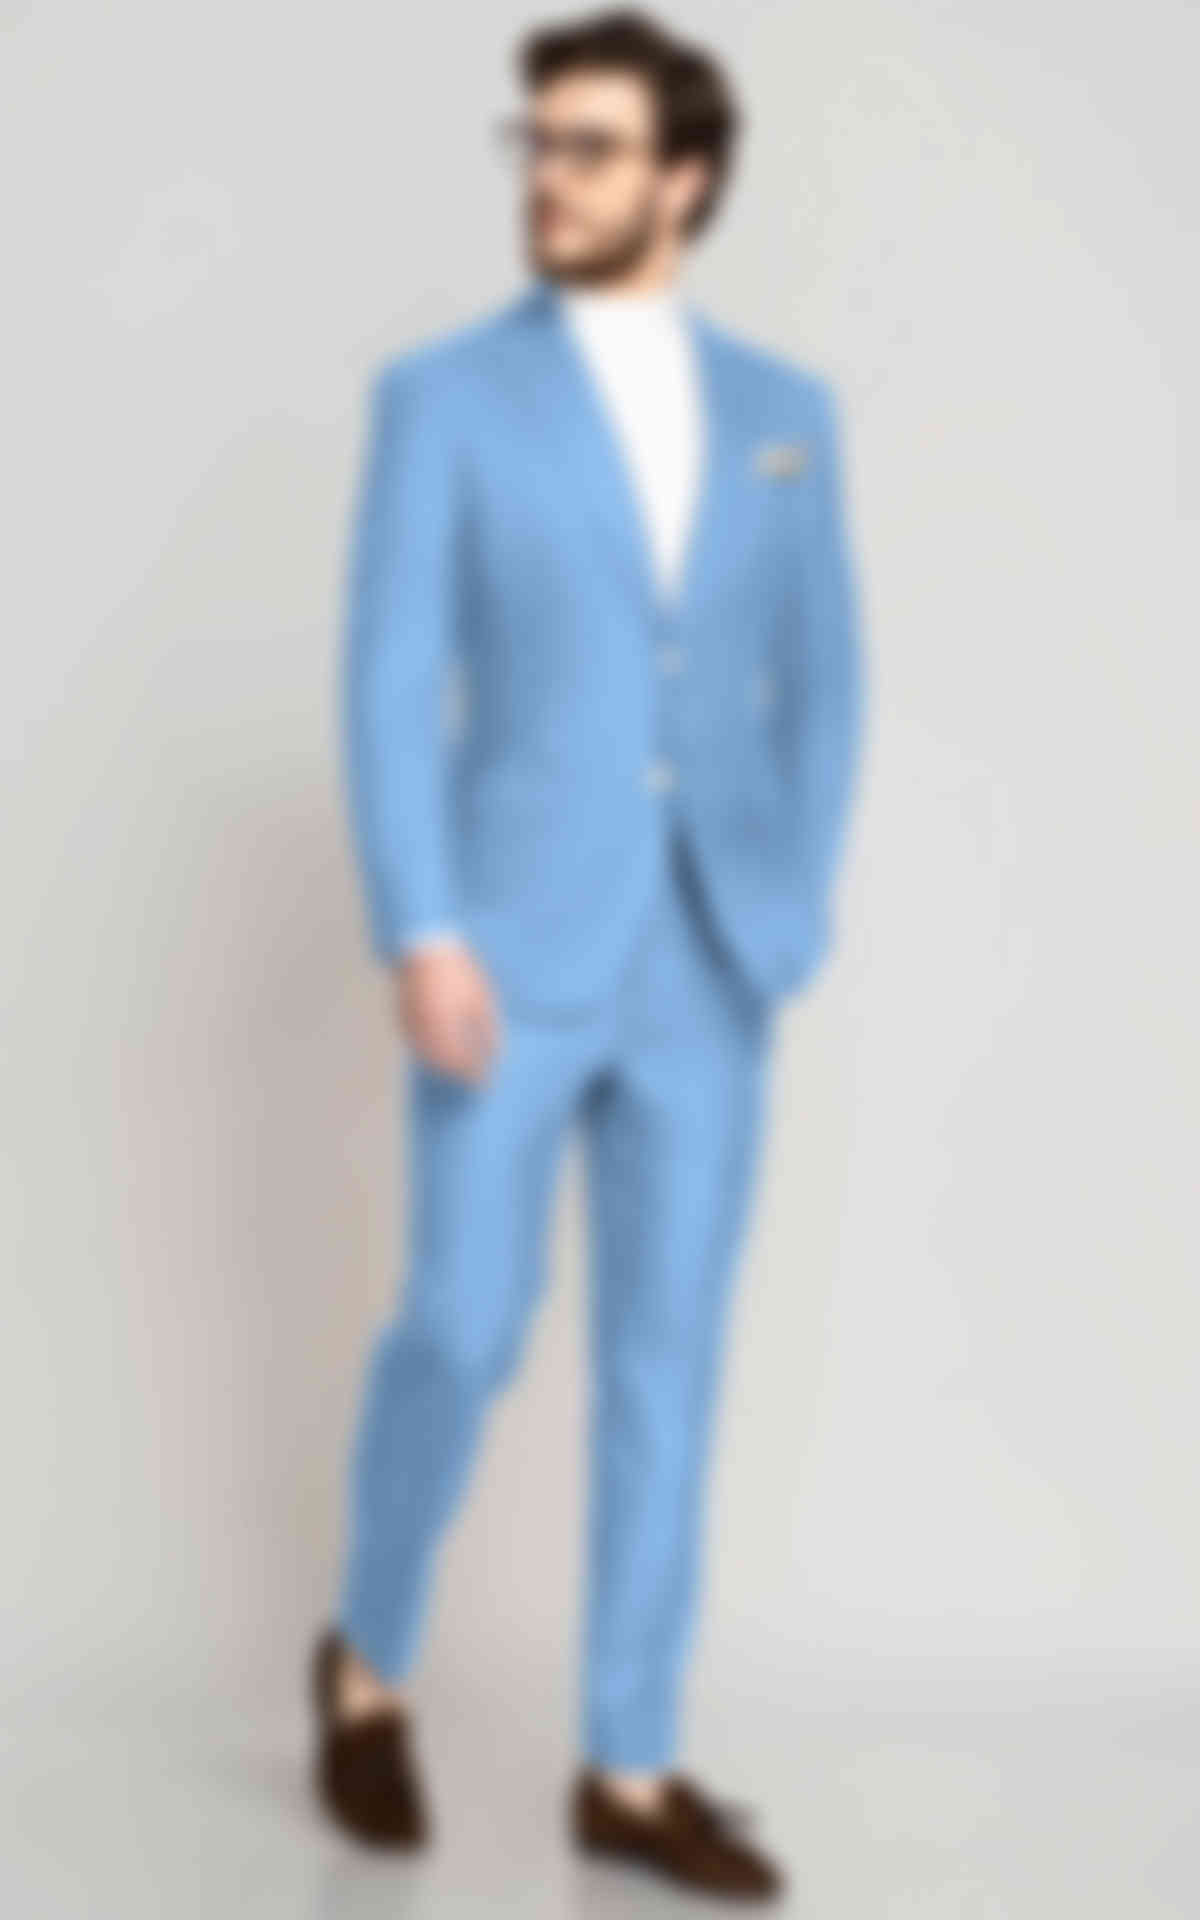 Light Blue Wool Suit